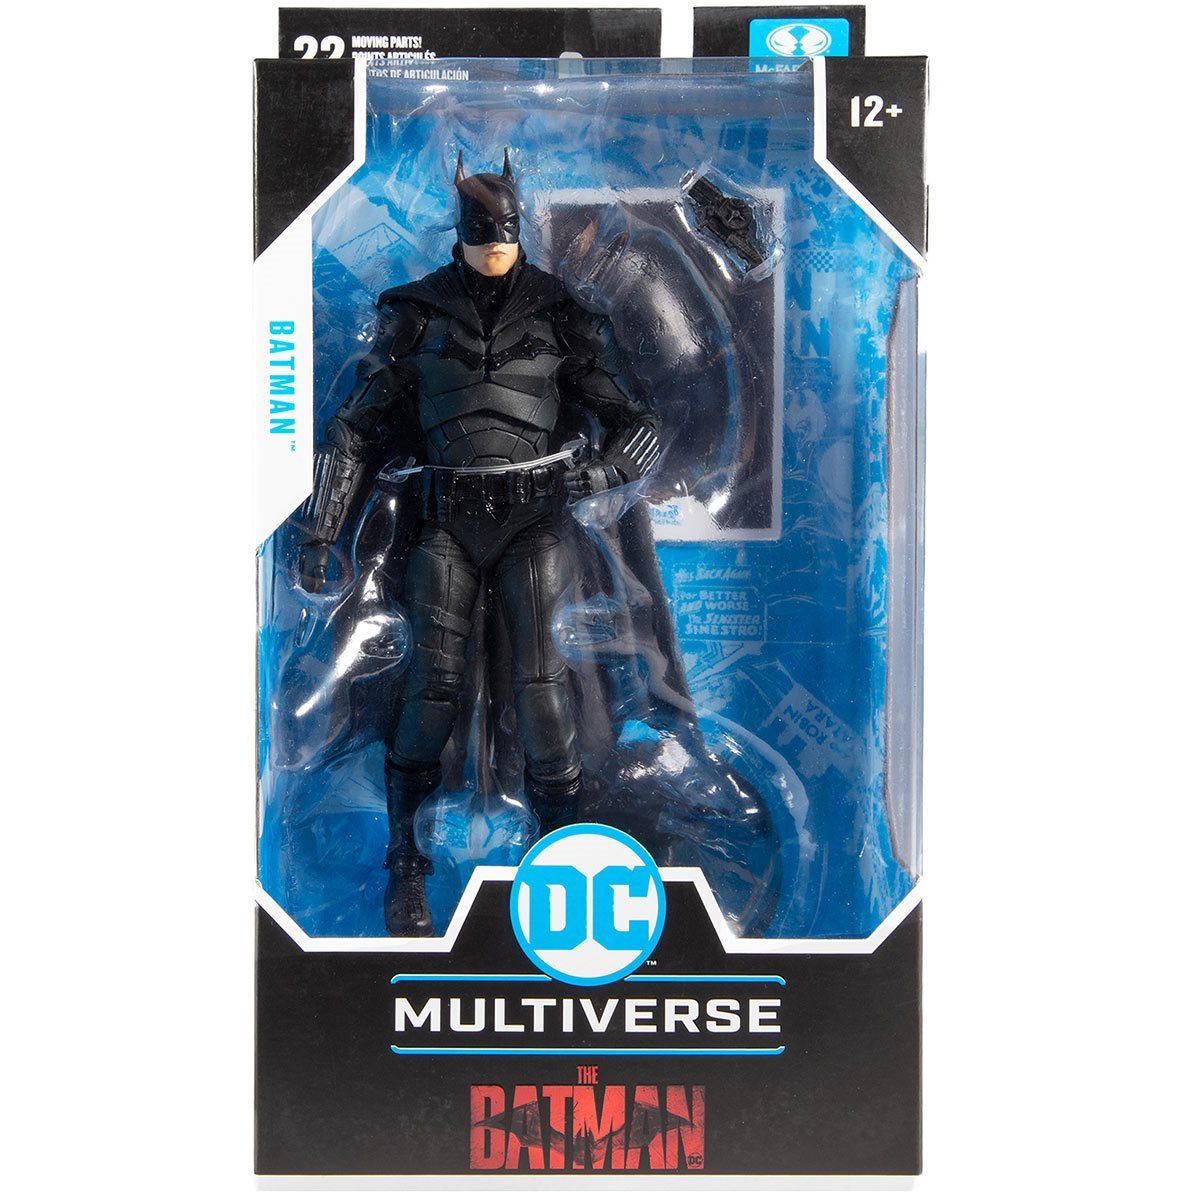 DC Multiverse, The Batman - Batman - McFARLANE